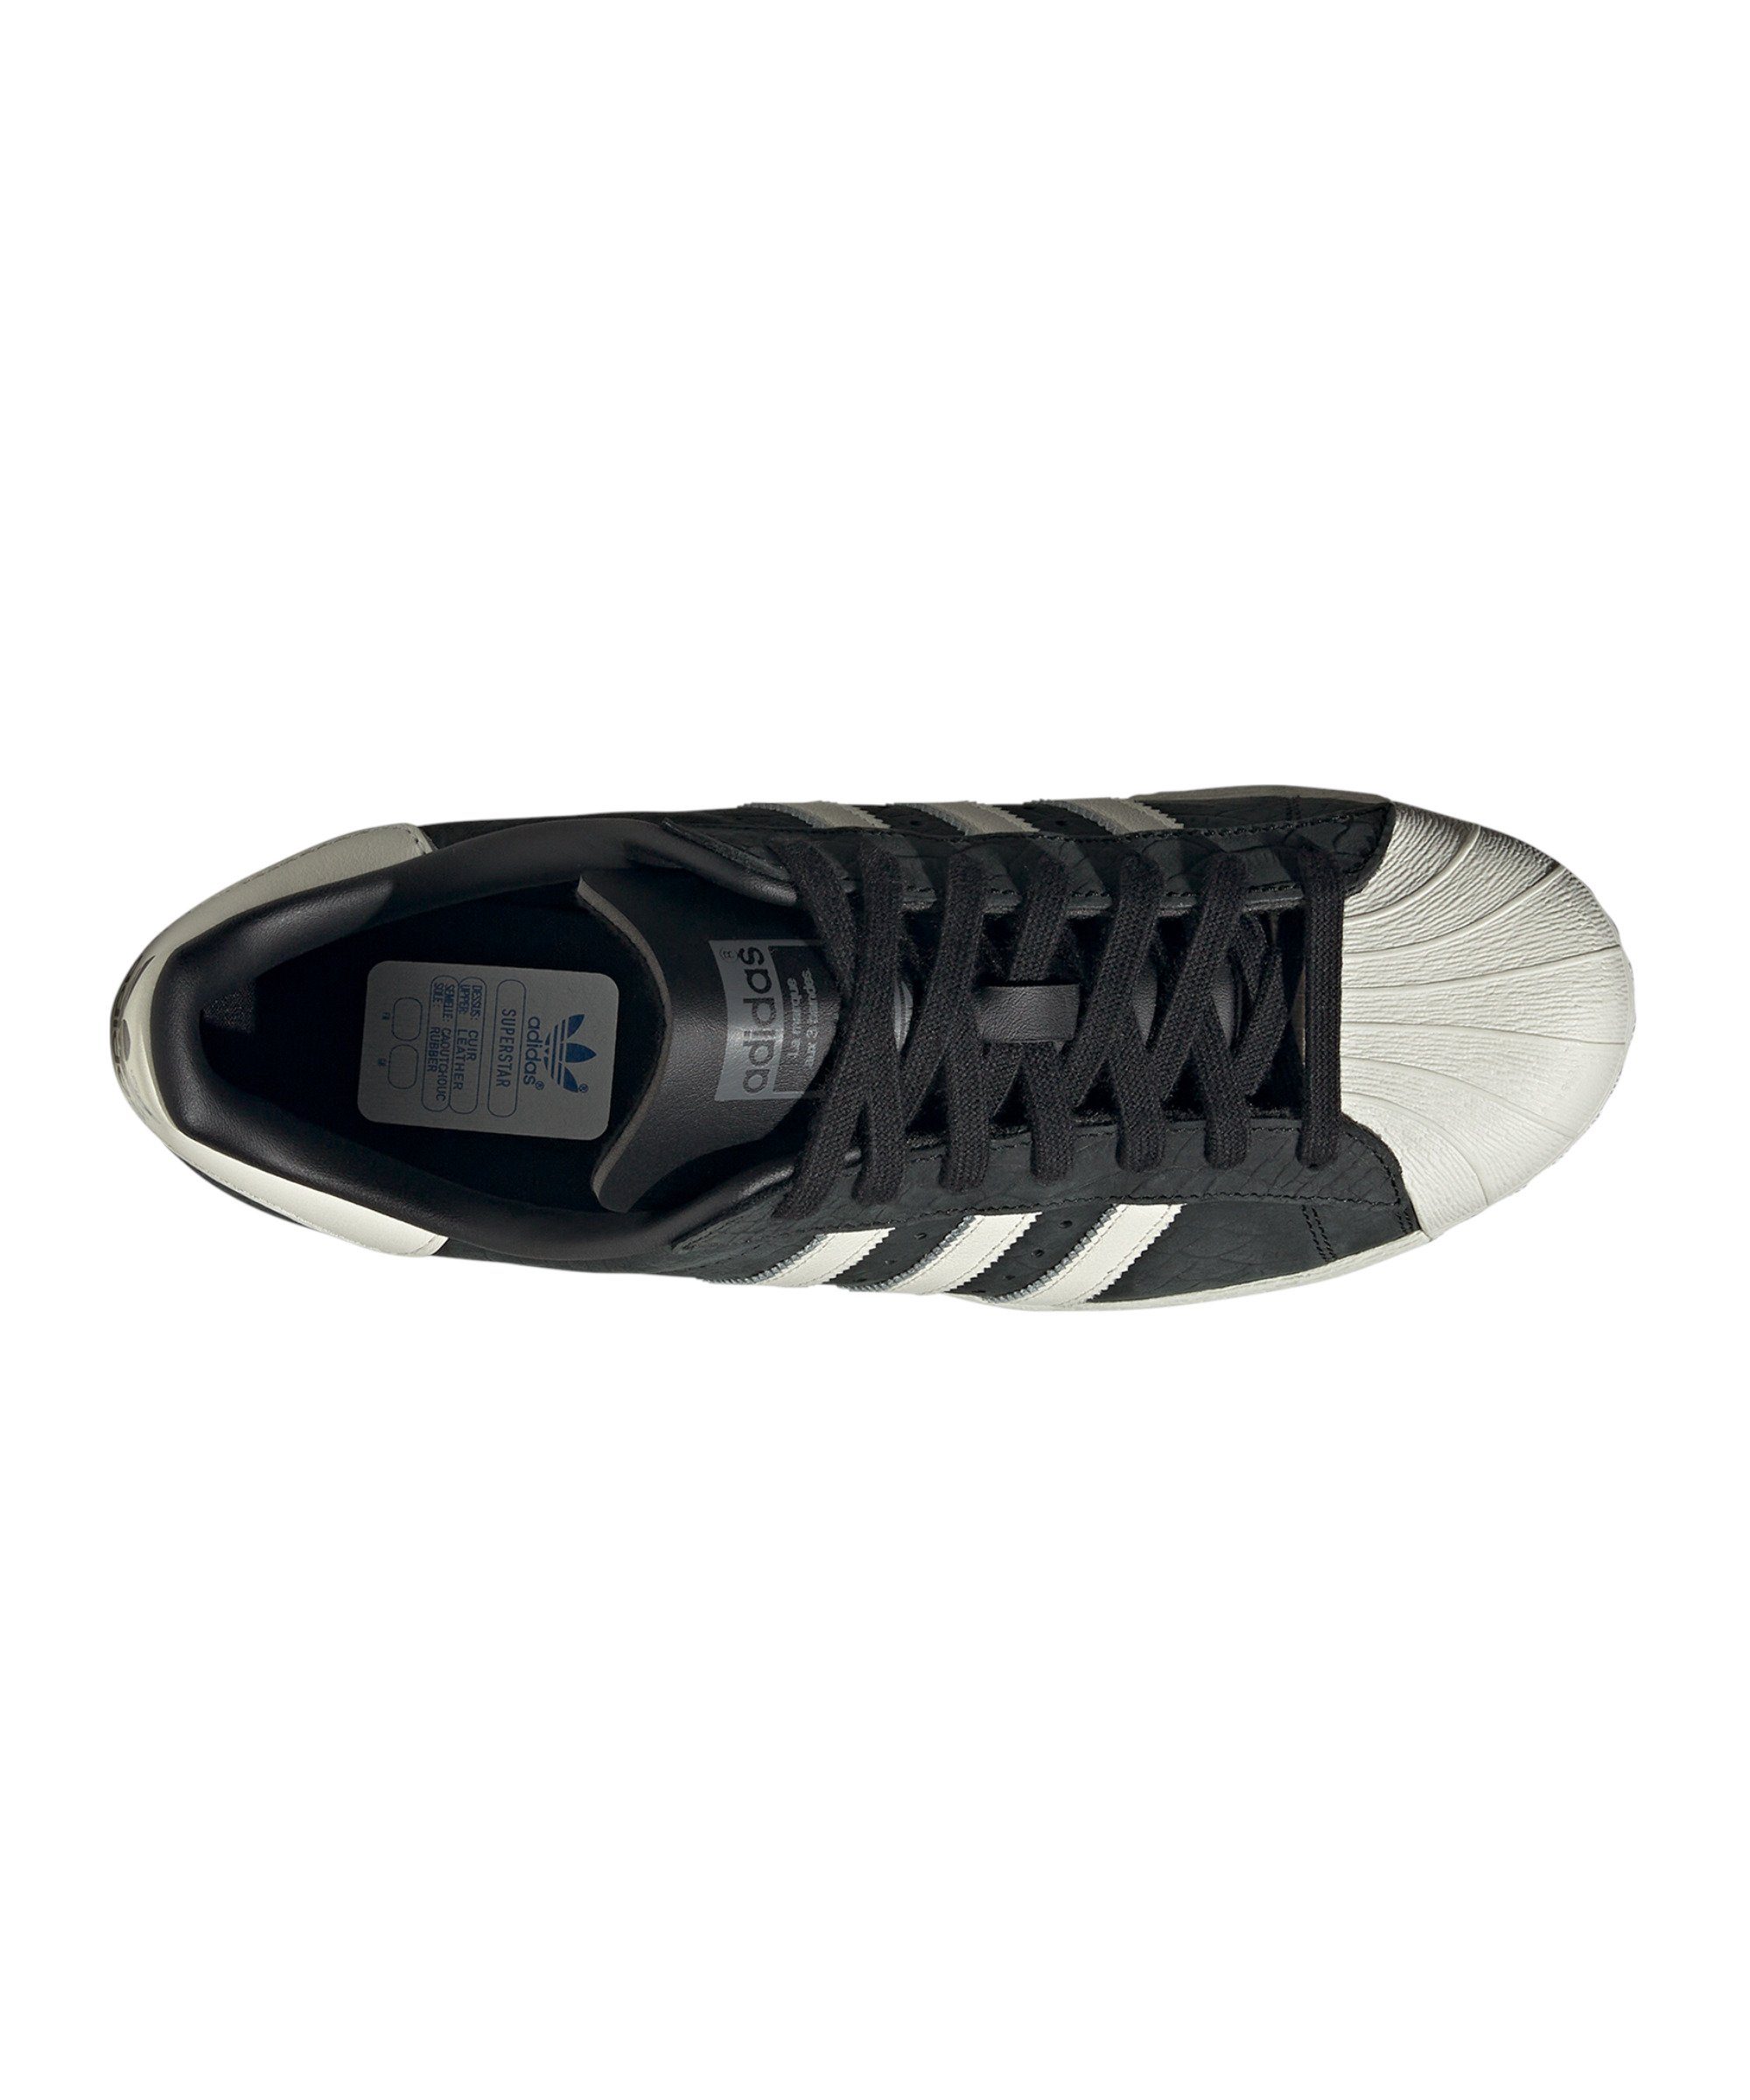 Sneaker Superstar schwarzweissschwarz 82 adidas Originals